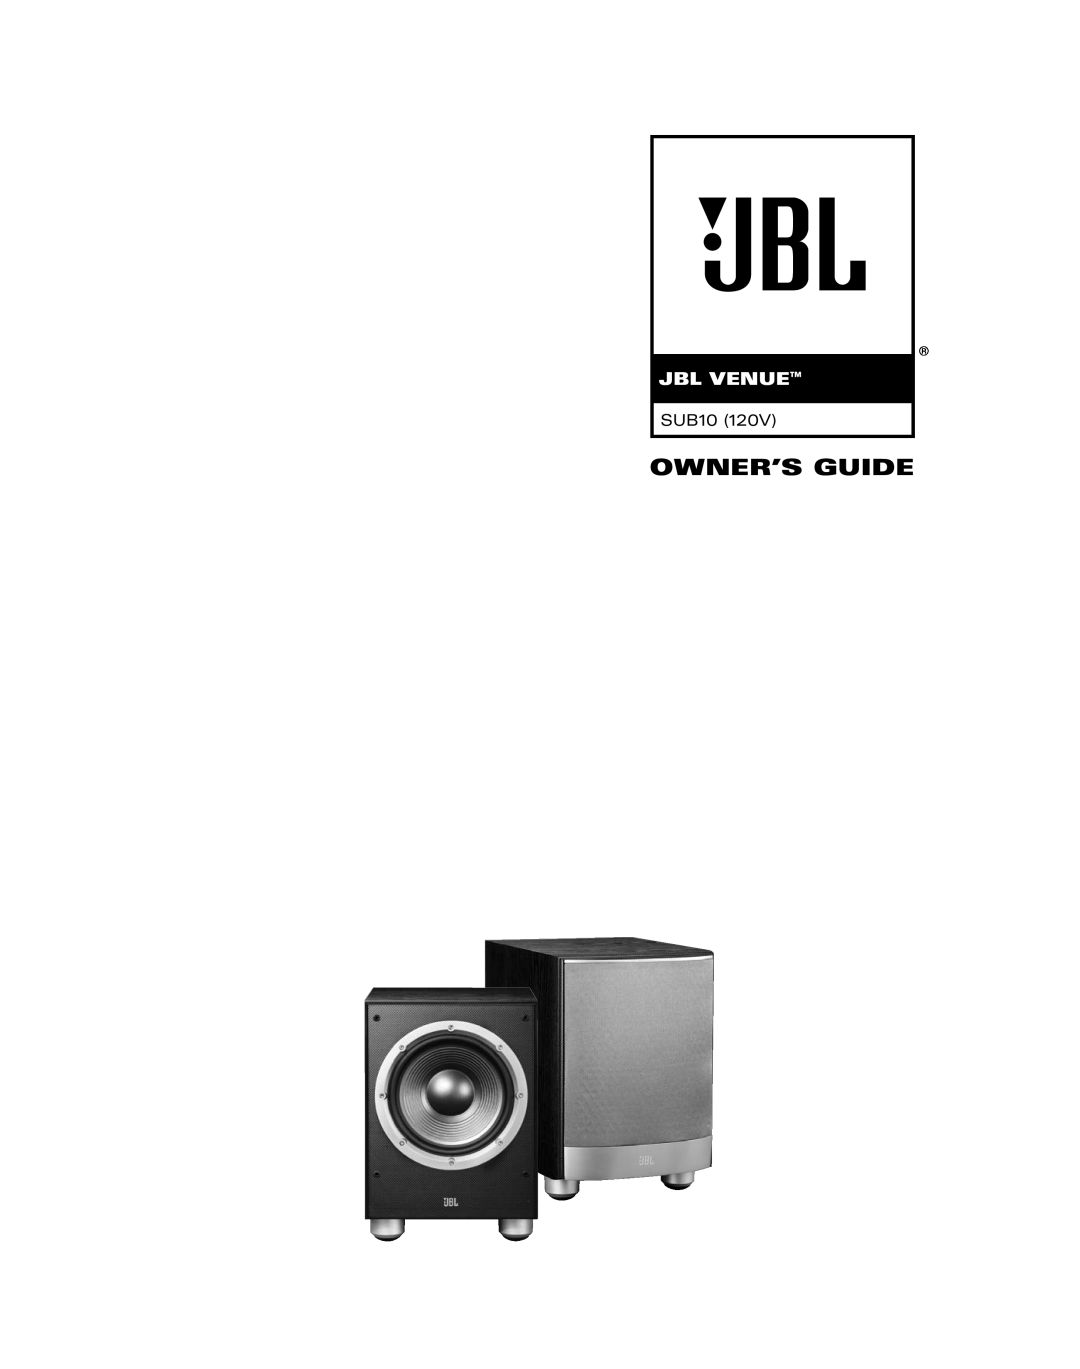 JBL SUB10 manual Jbl Venue, Owner’S Guide 